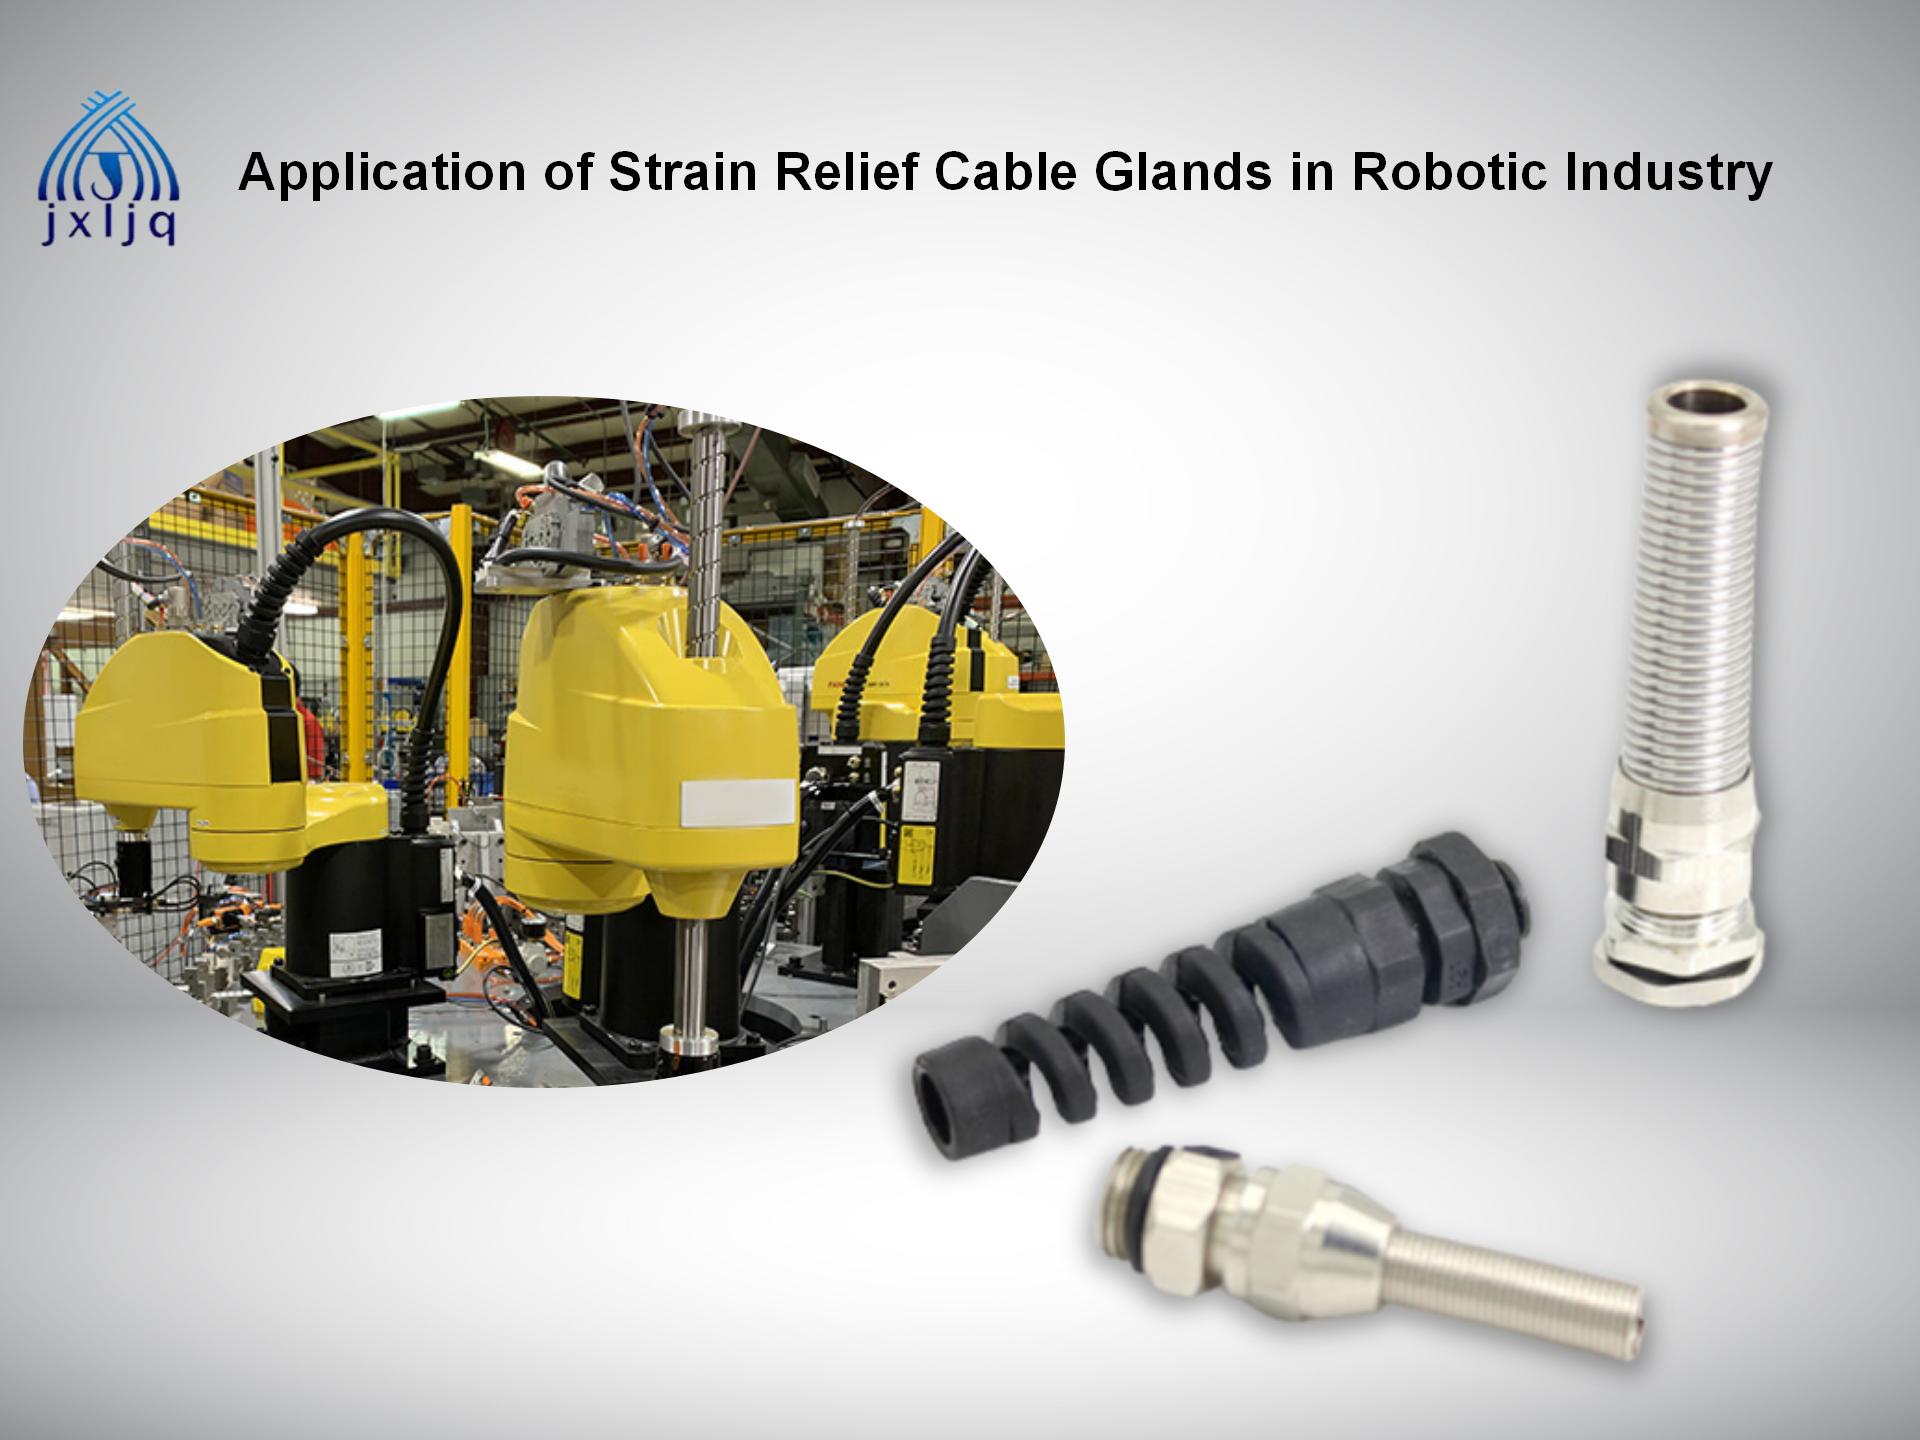 Aikace-aikacen Ƙarƙashin Taimakon Cable Glands a Masana'antar Robotic